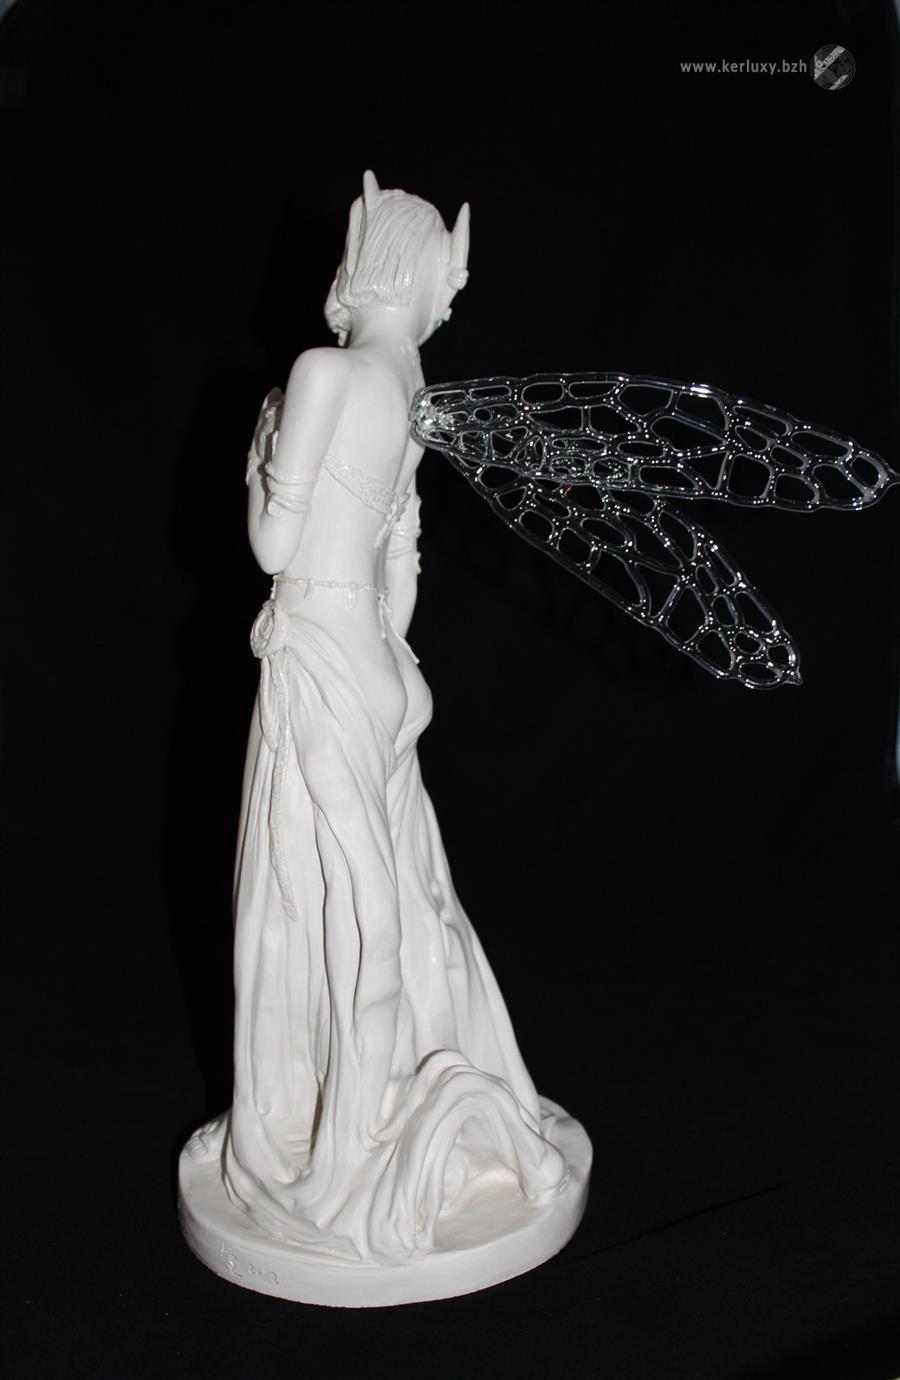 sculpture - Caliawen, Elfe lumineuse - Mylène La Sculptrice